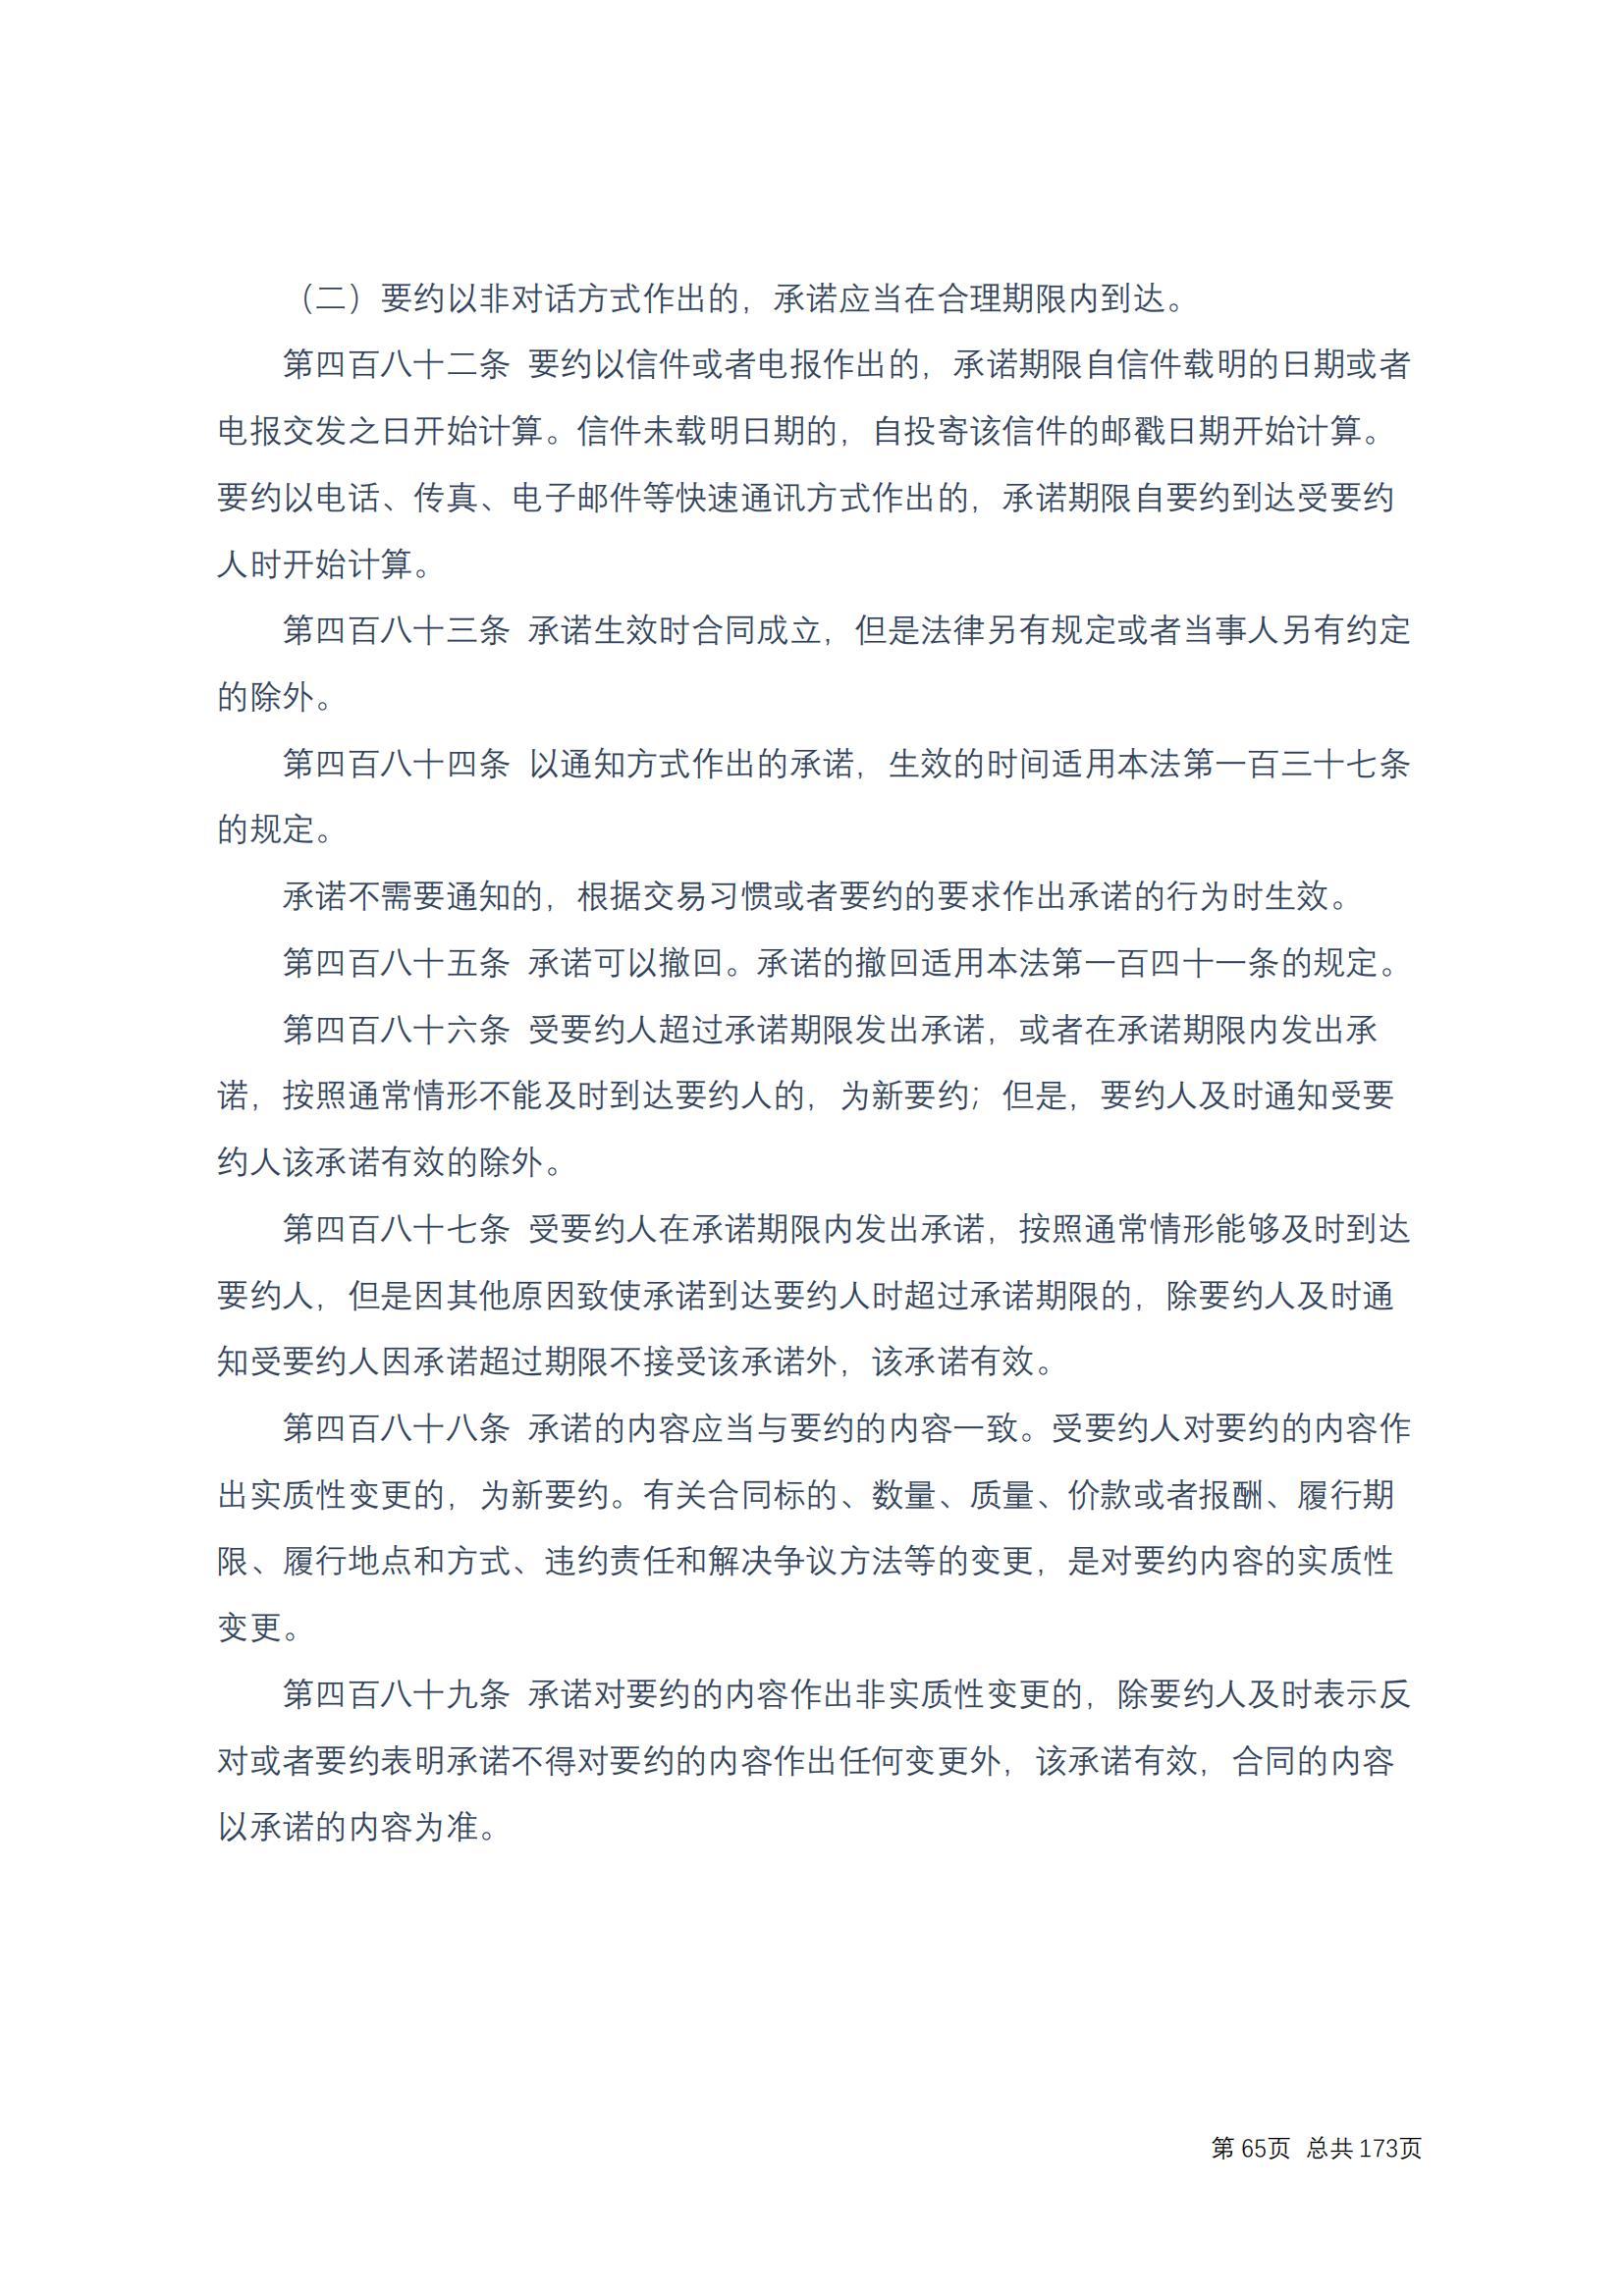 中华人民共和国民法典 修改过_64